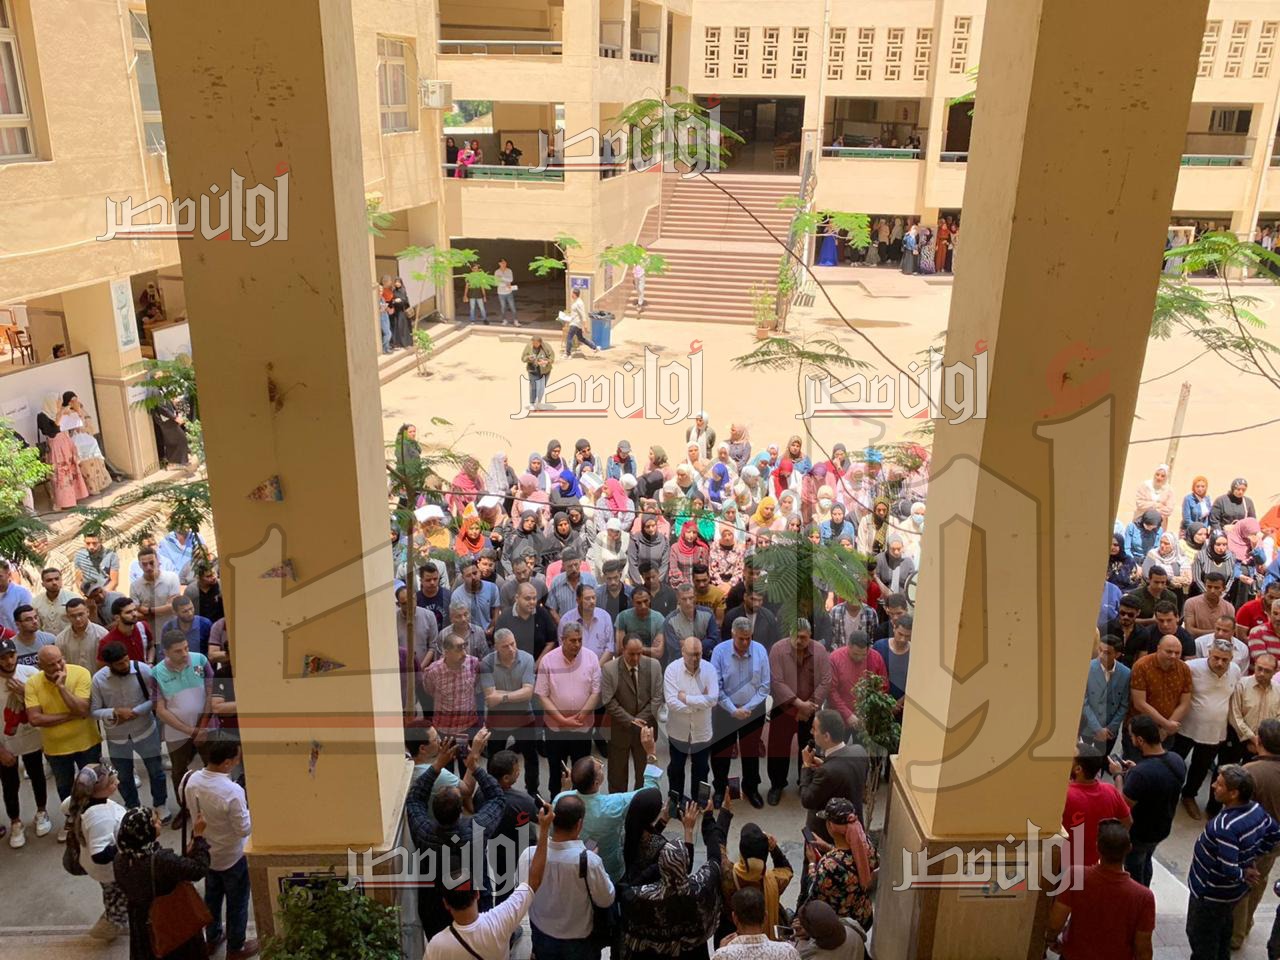 شاهد| أصدقاء نيرة أشرف طالبة جامعة المنصورة يتجمعون ويزينون مكان مقتلها بالورود ويحملون صورها